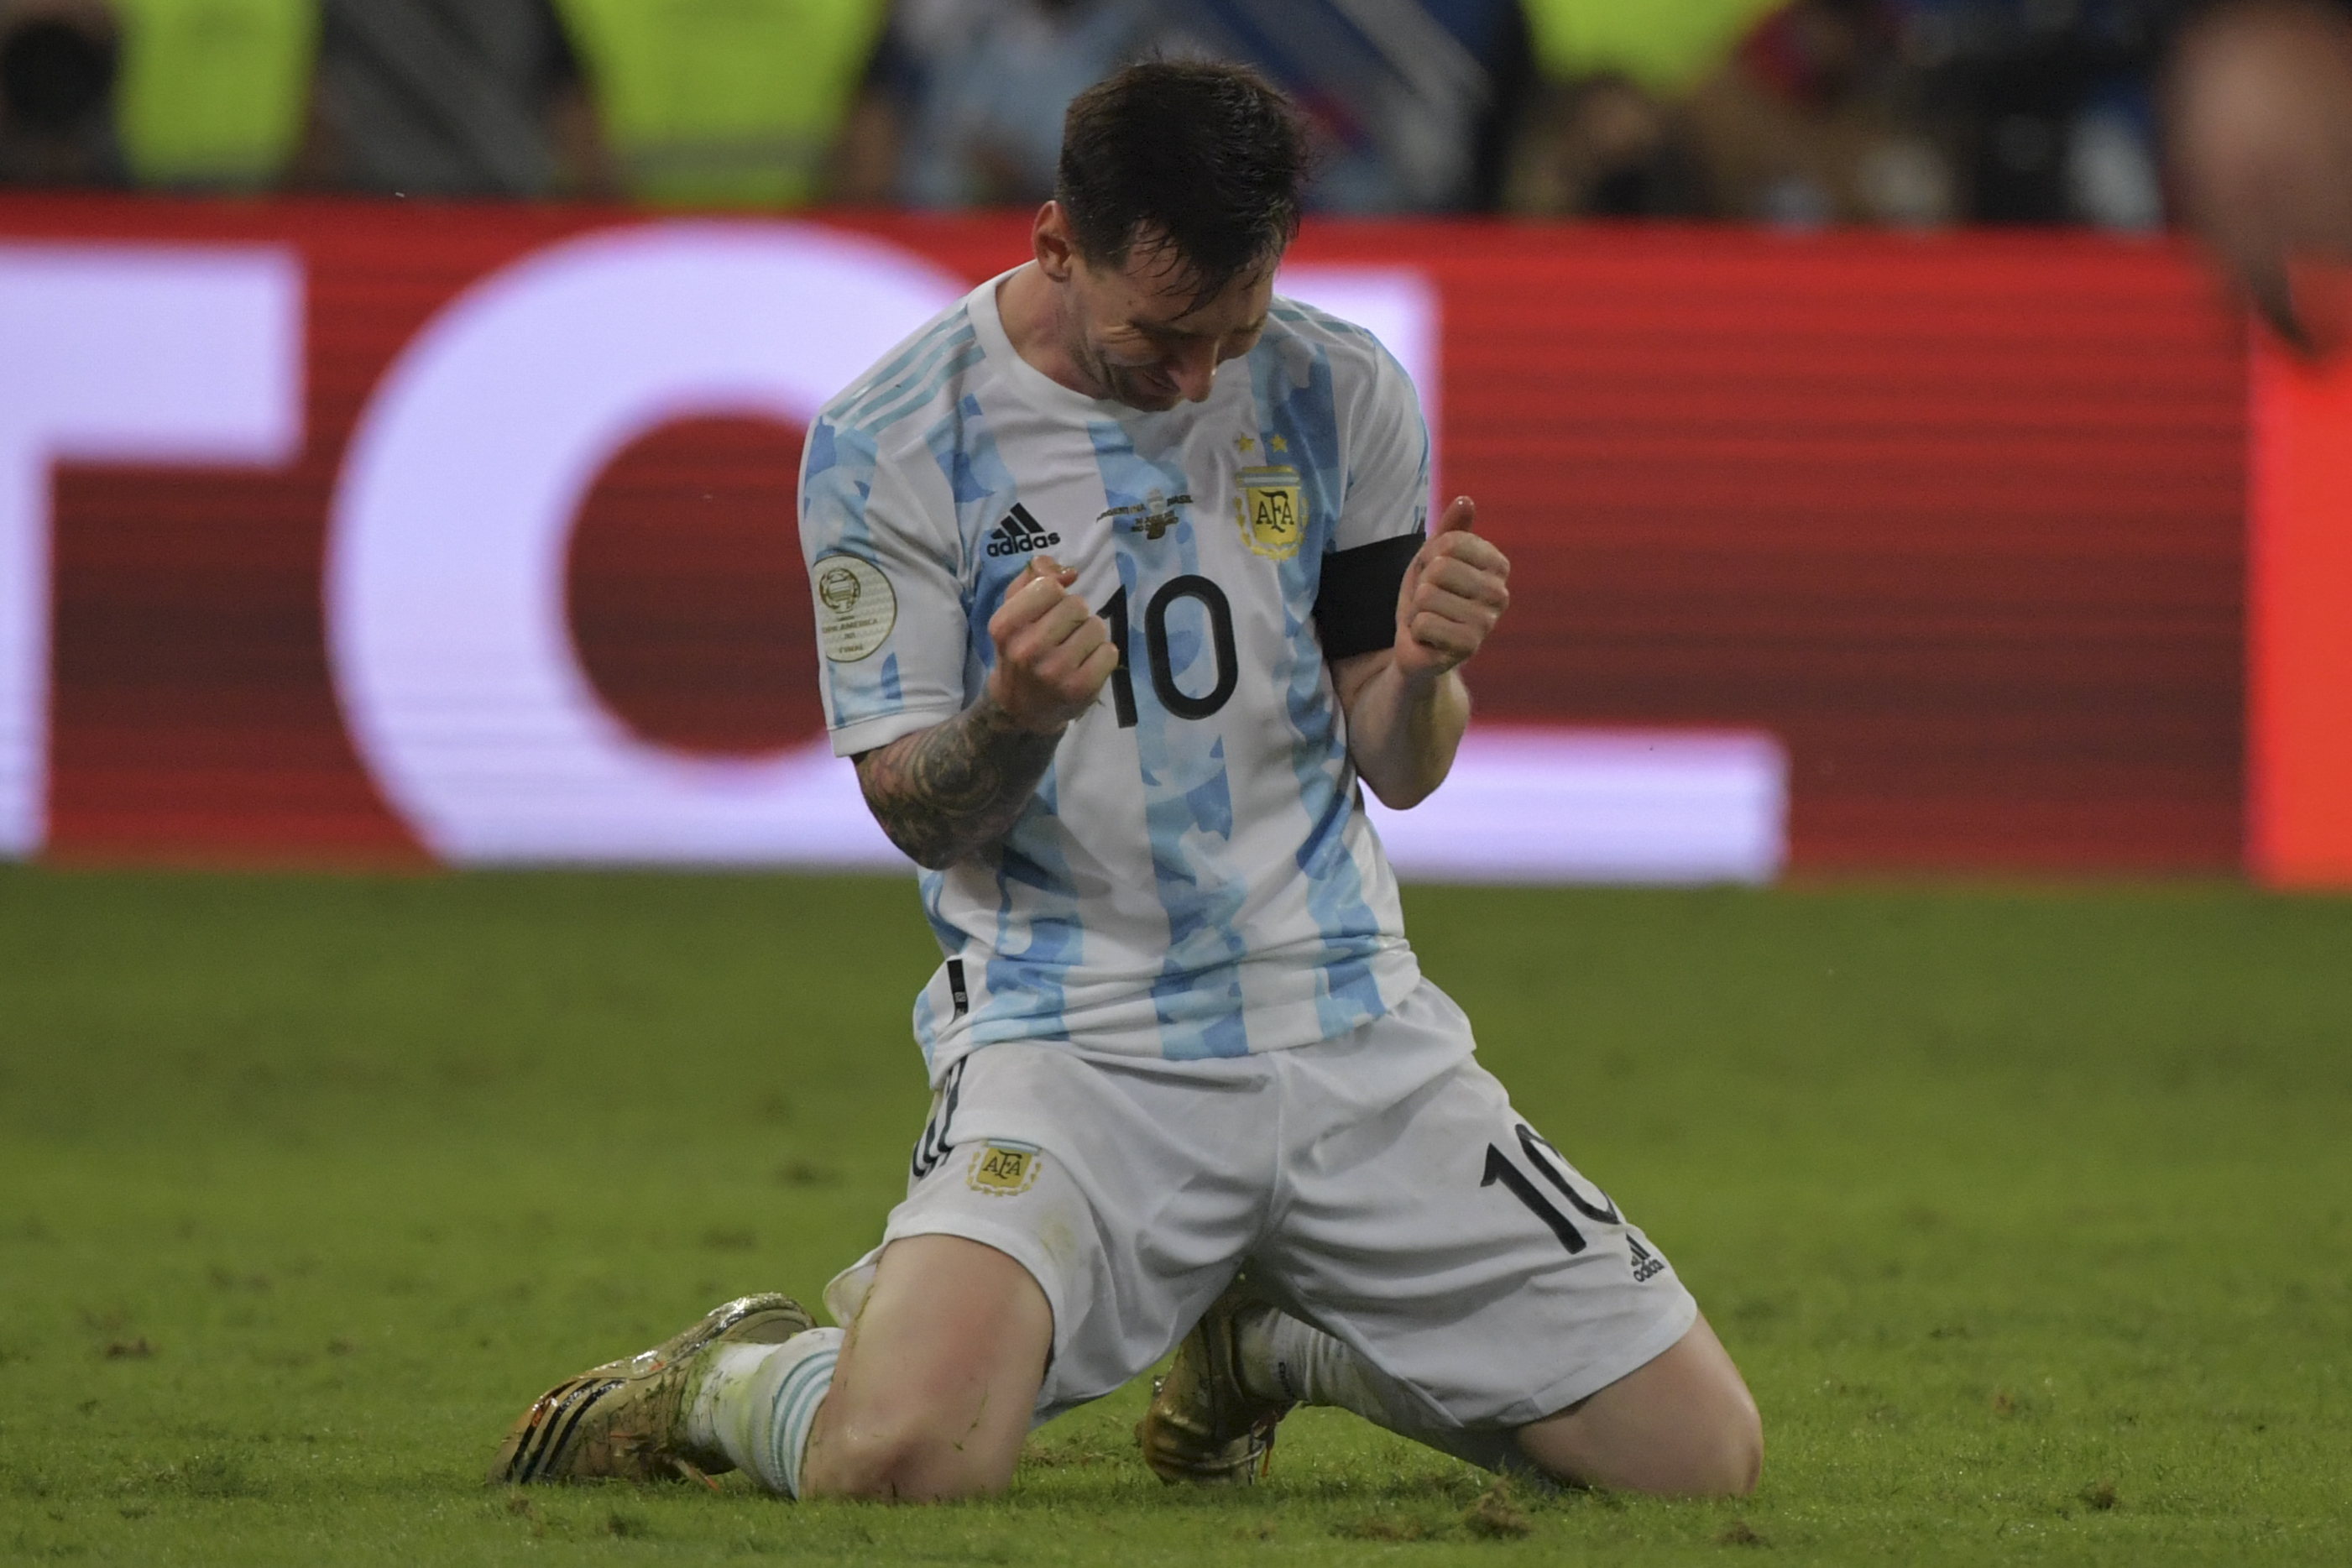 In pics: Lionel Messi celebrates Argentina's Copa America win